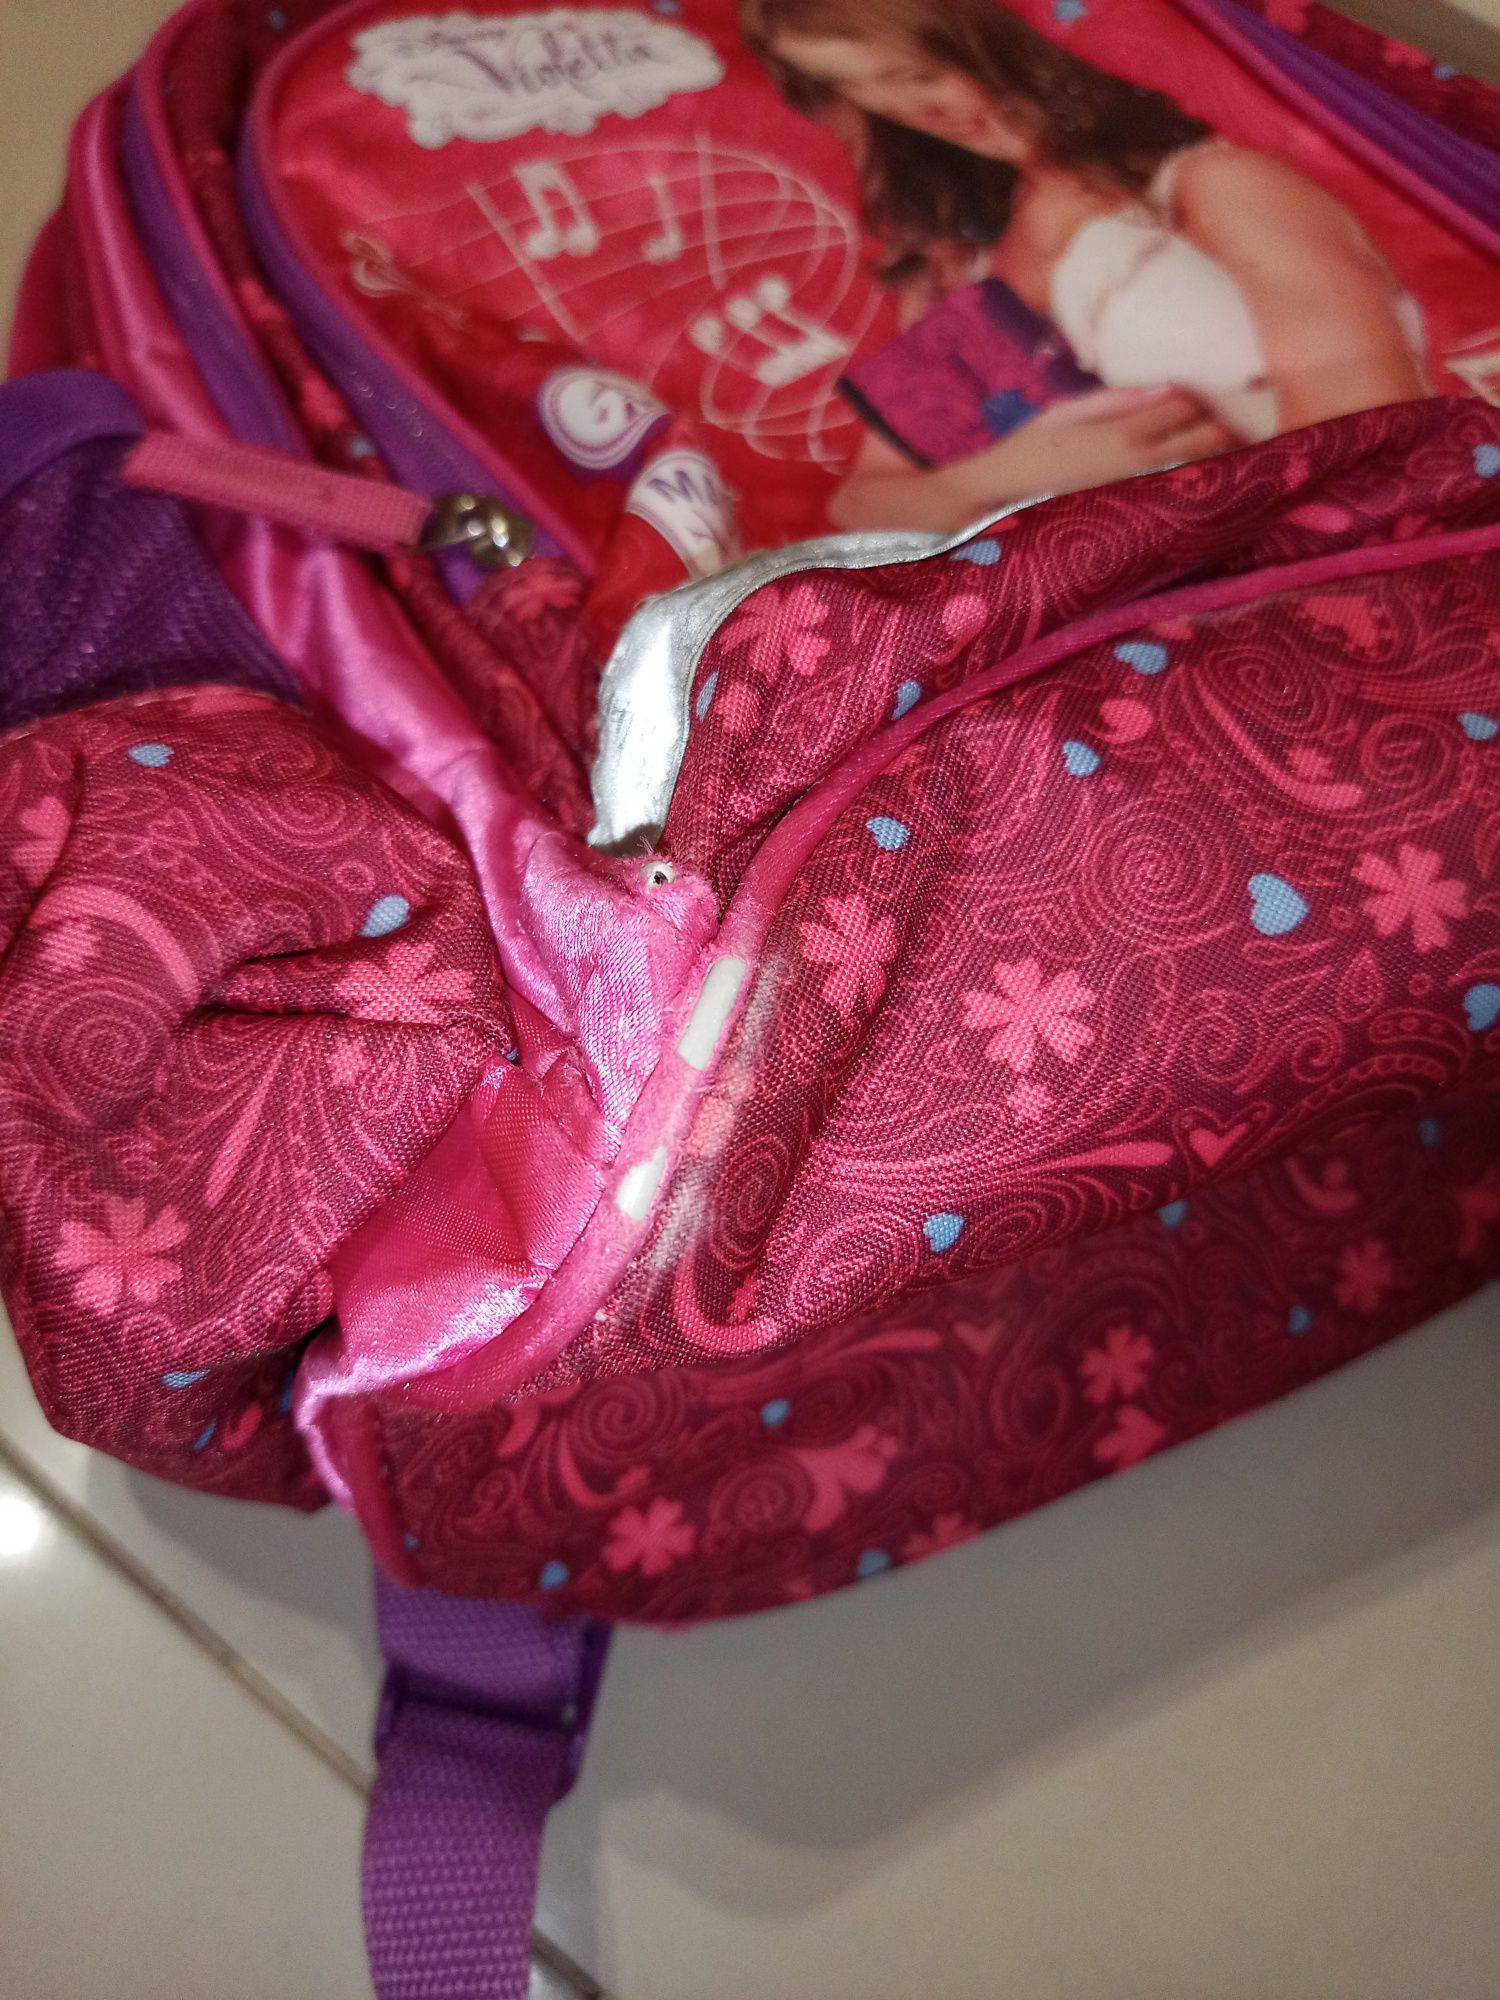 Disney Violetta plecak szkolny do szkoły Fioletowy 40 x 30 cm